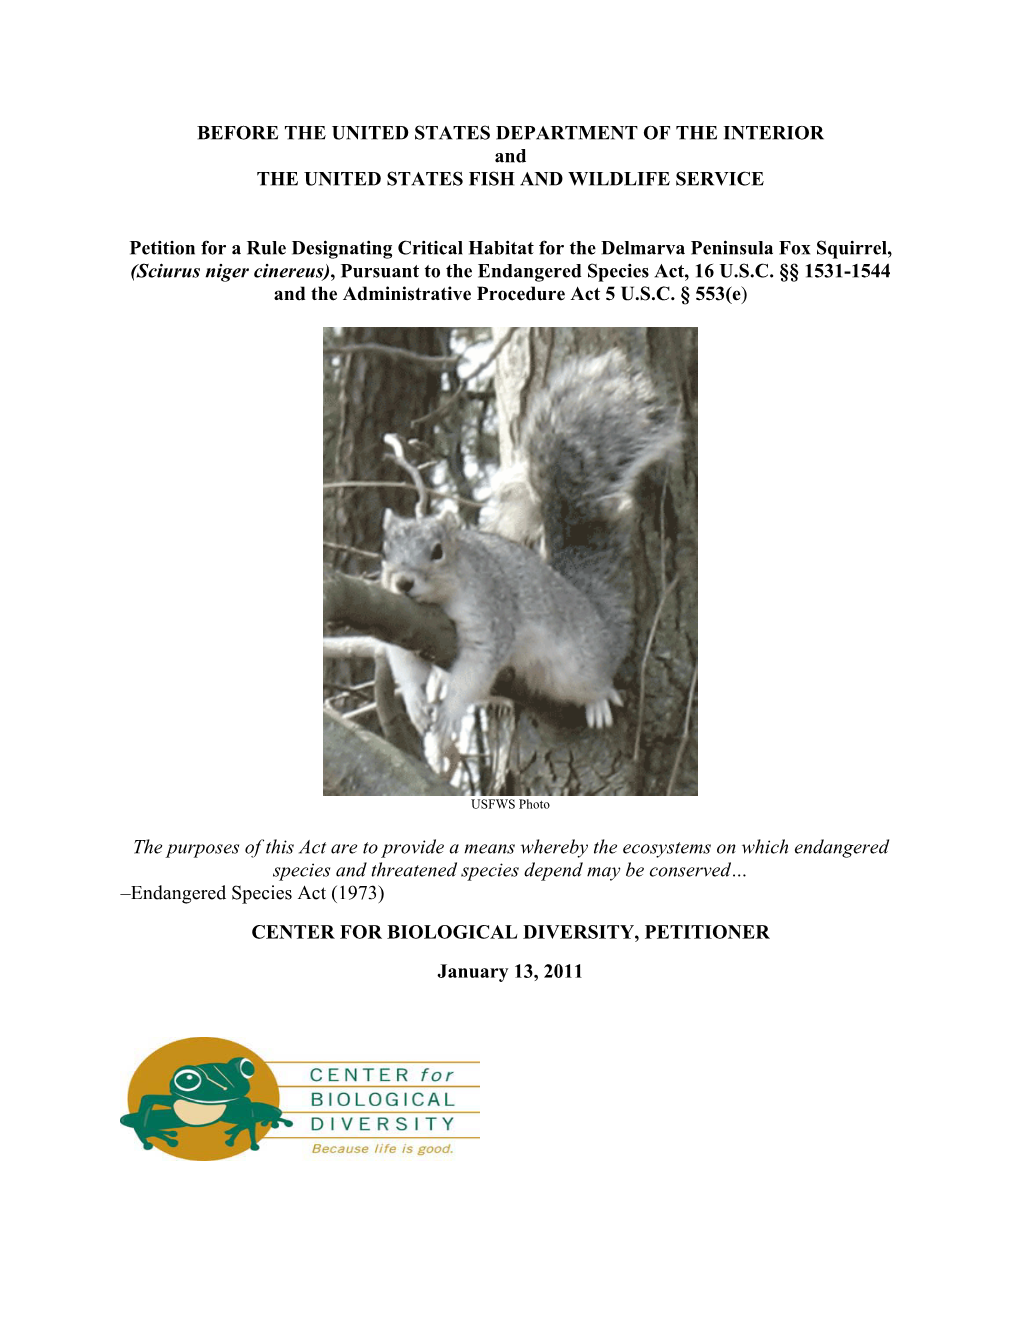 Petition for a Rule Designating Critical Habitat for the Delmarva Peninsula Fox Squirrel, (Sciurus Niger Cinereus), Pursuant to the Endangered Species Act, 16 U.S.C